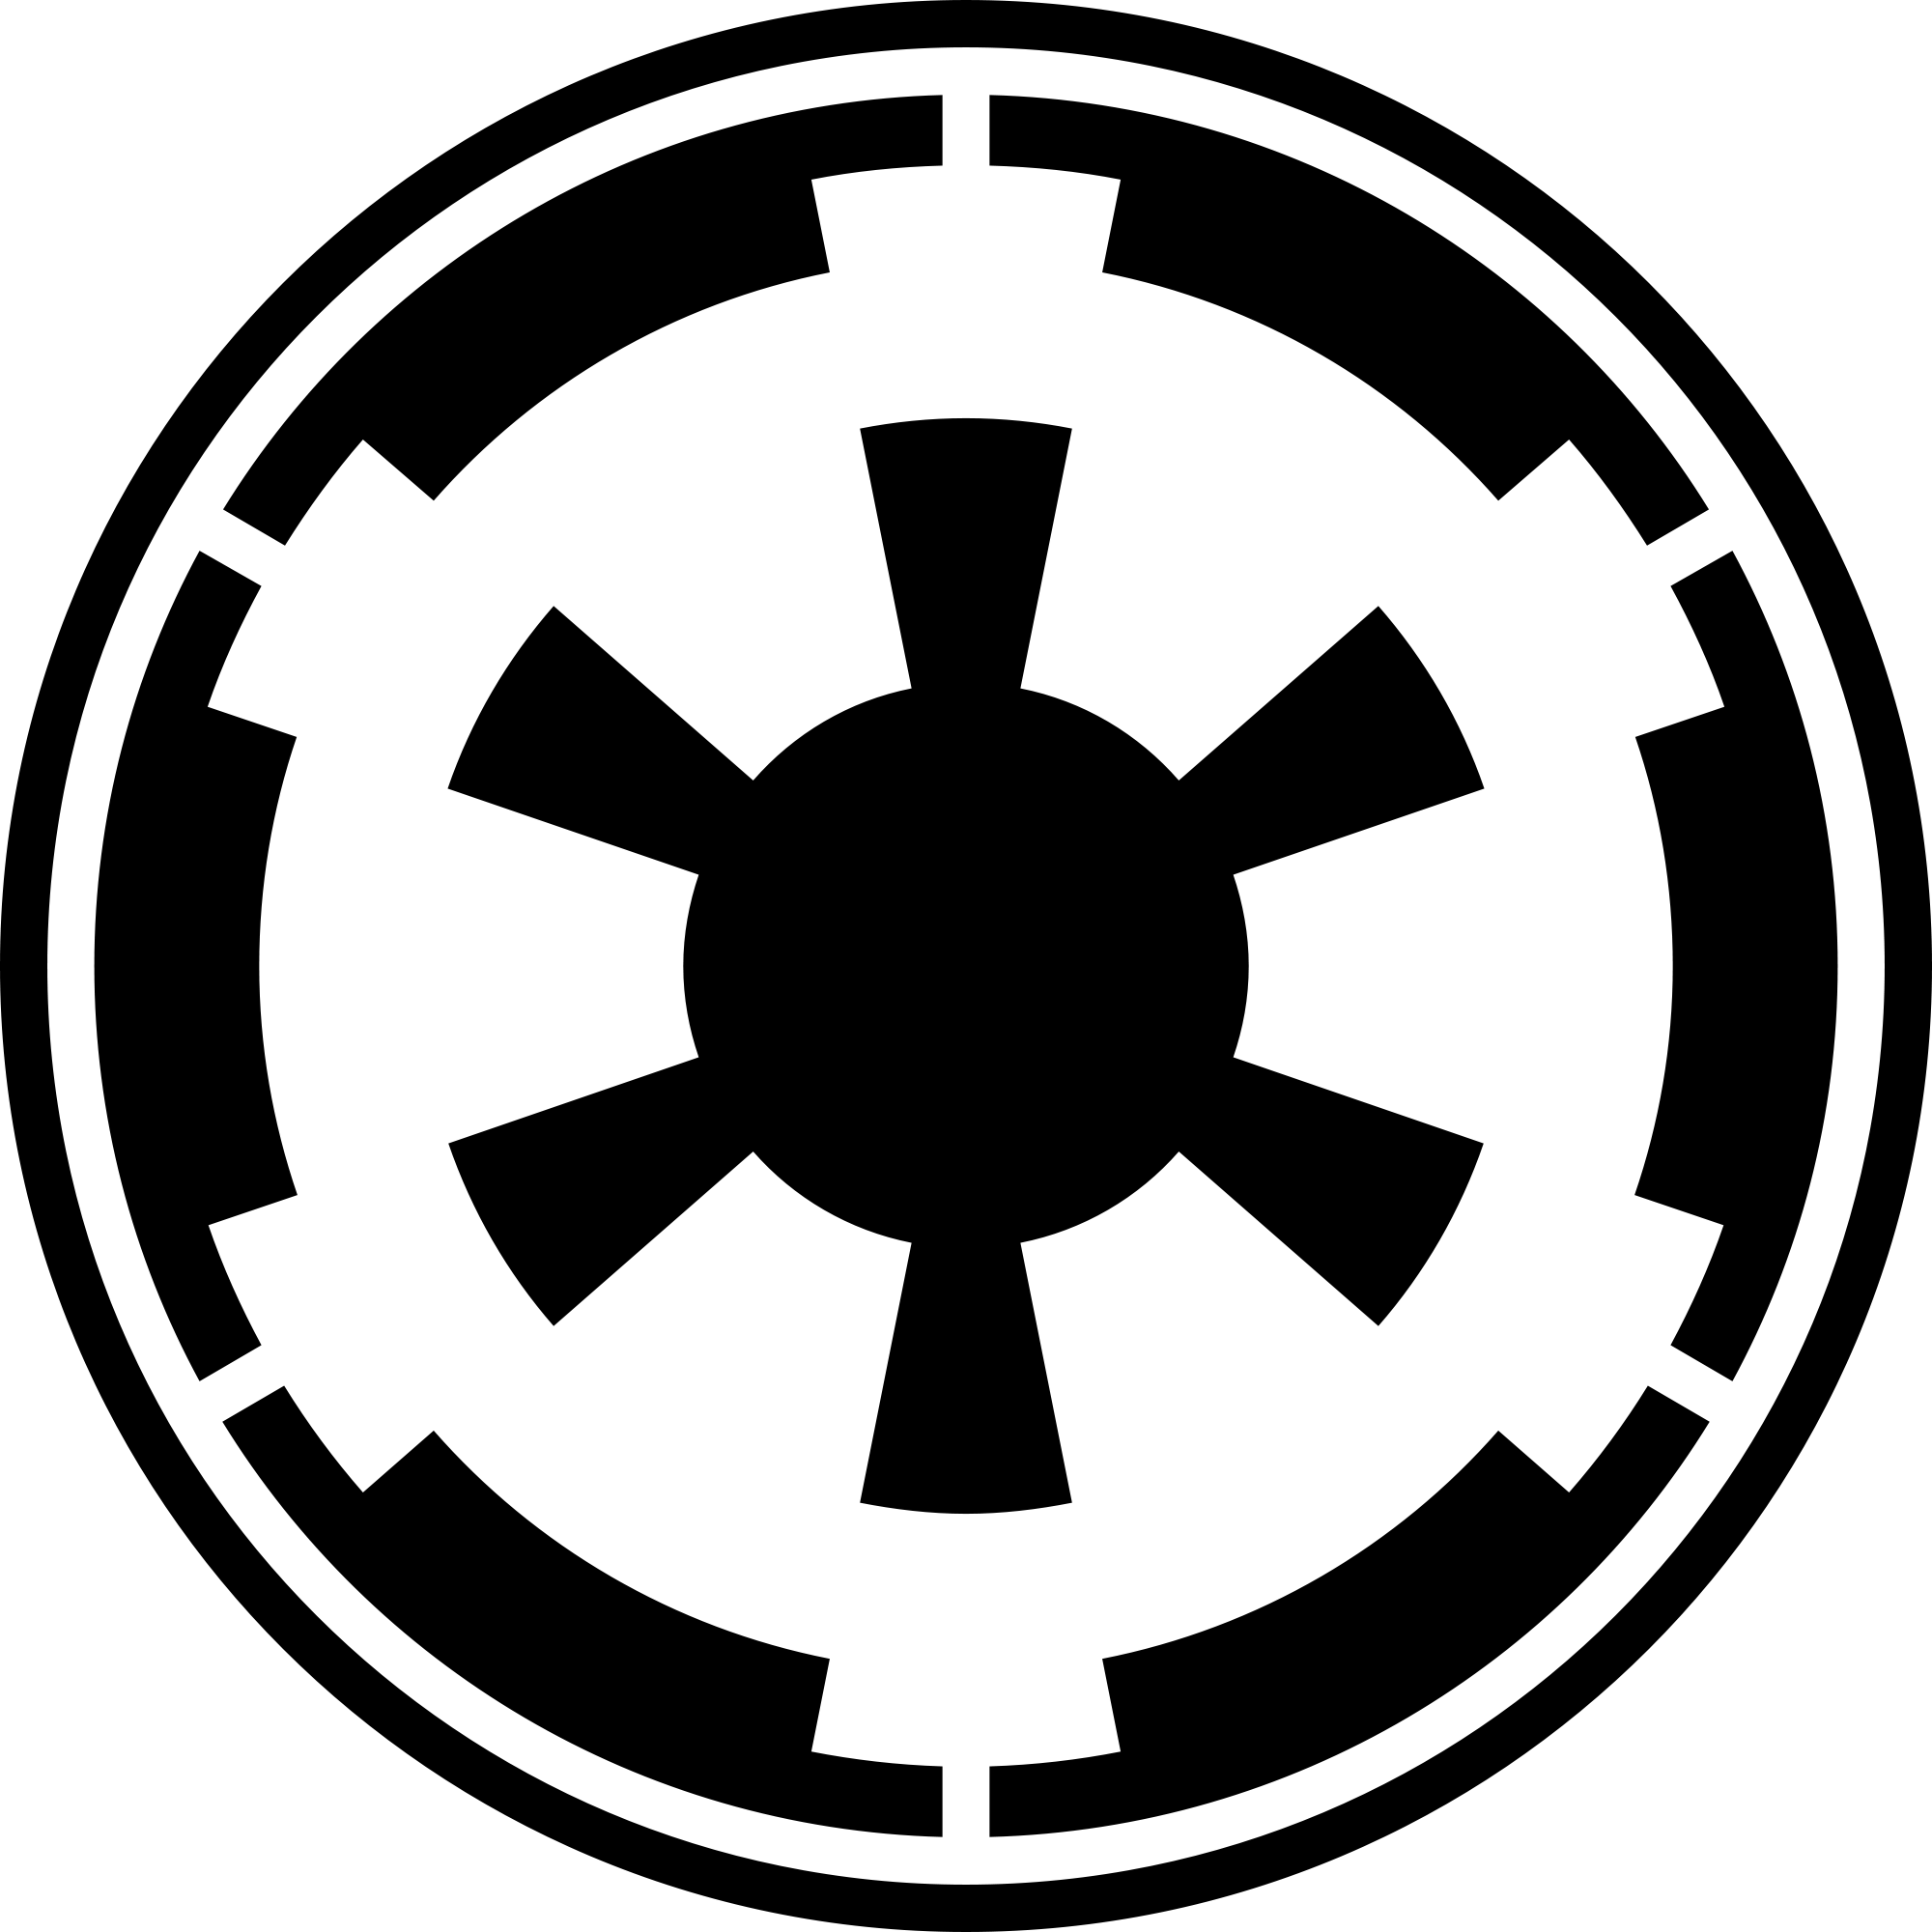 Galactic_Empire_emblem.png